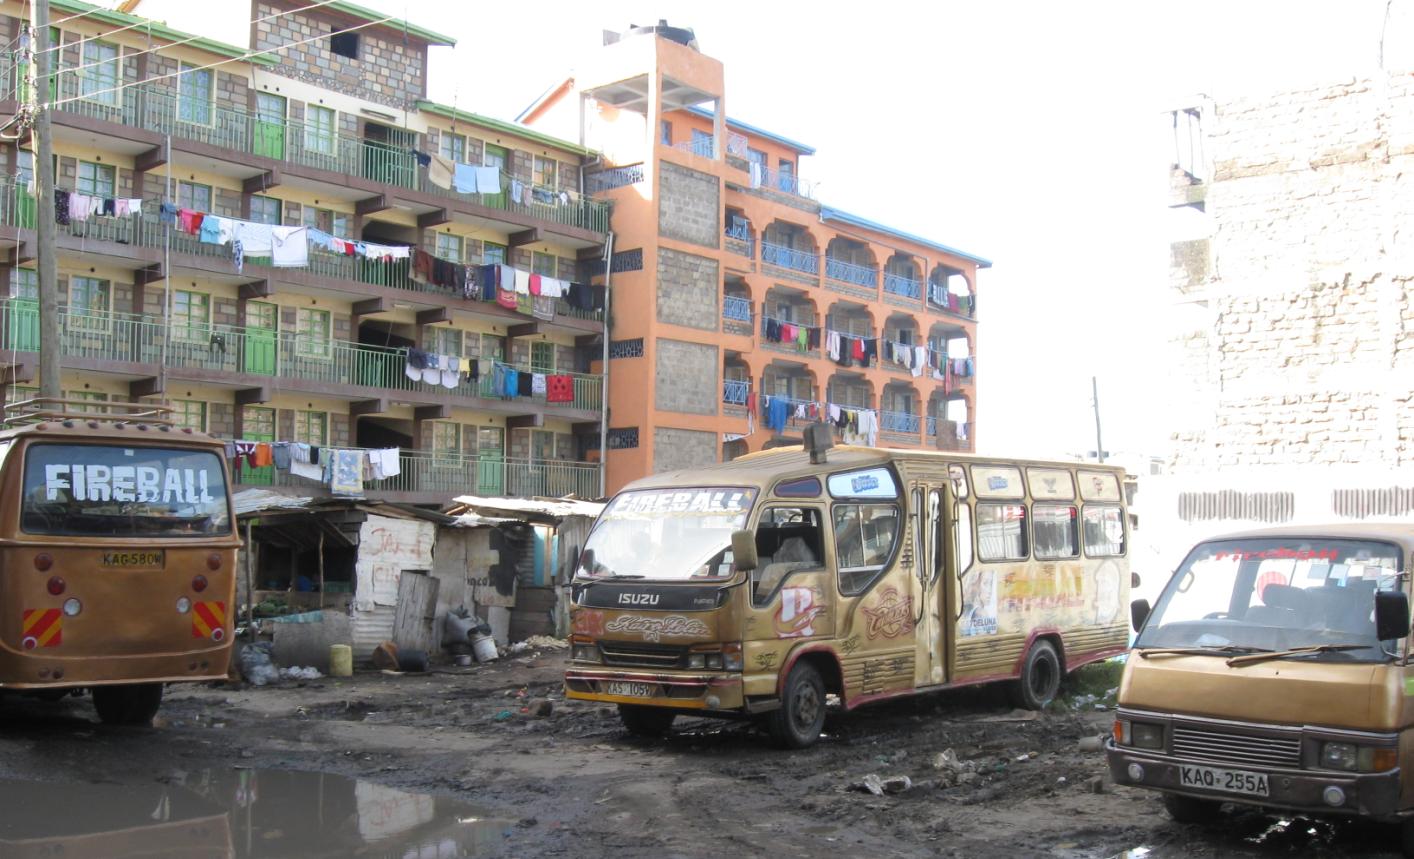 Matatu Hilfe zur Selbsthilfe M4 15 Matatu so heißen in Kenia die Kleinbusse, die einen wesentlichen Teil des Personenverkehrs bewältigen.